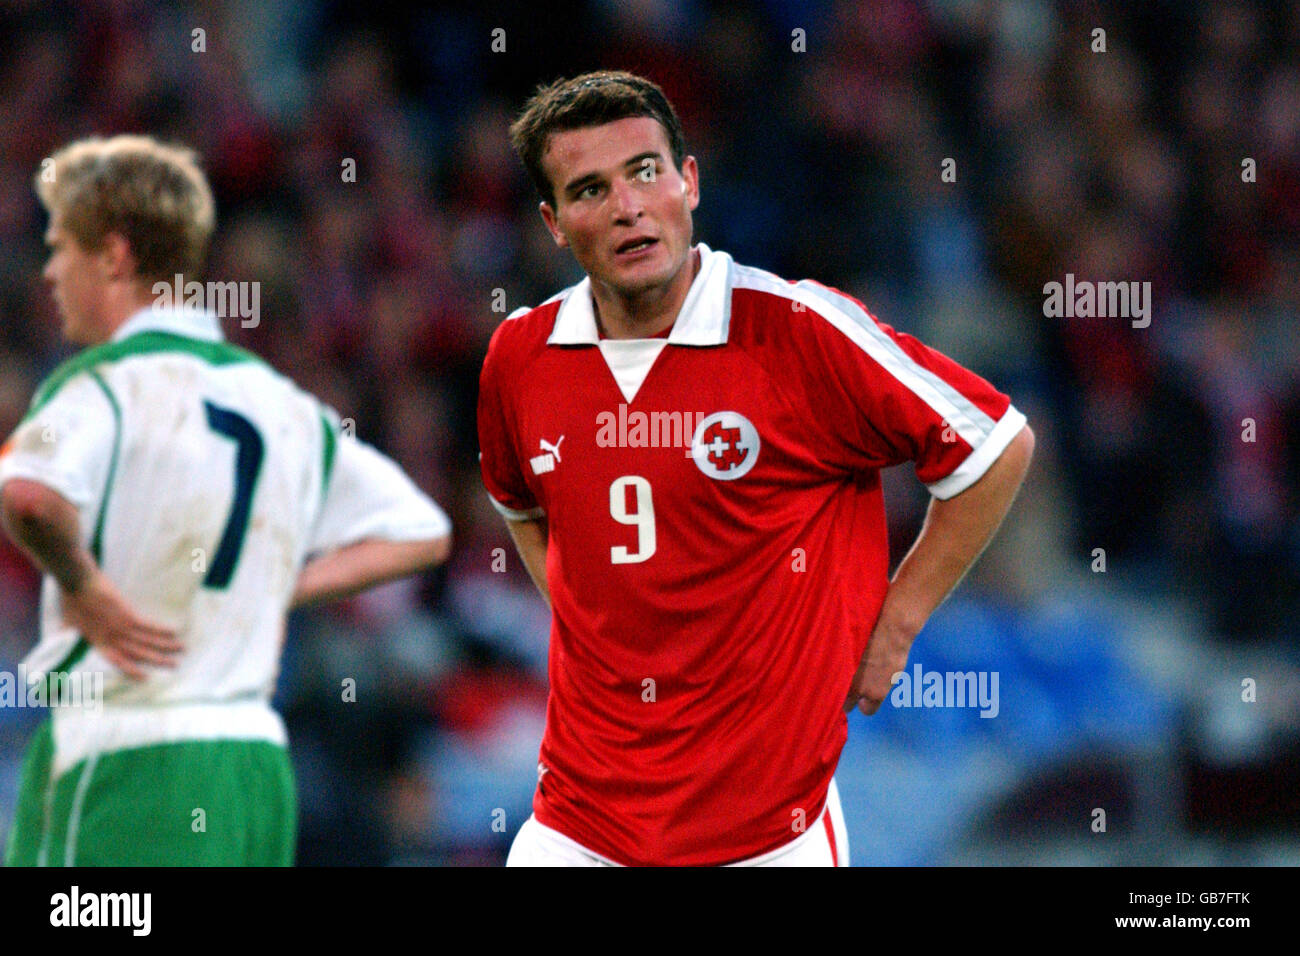 Calcio - Campionati europei 2004 Qualifier Group Ten - Svizzera / Irlanda. Alexander Frei, Svizzera Foto Stock